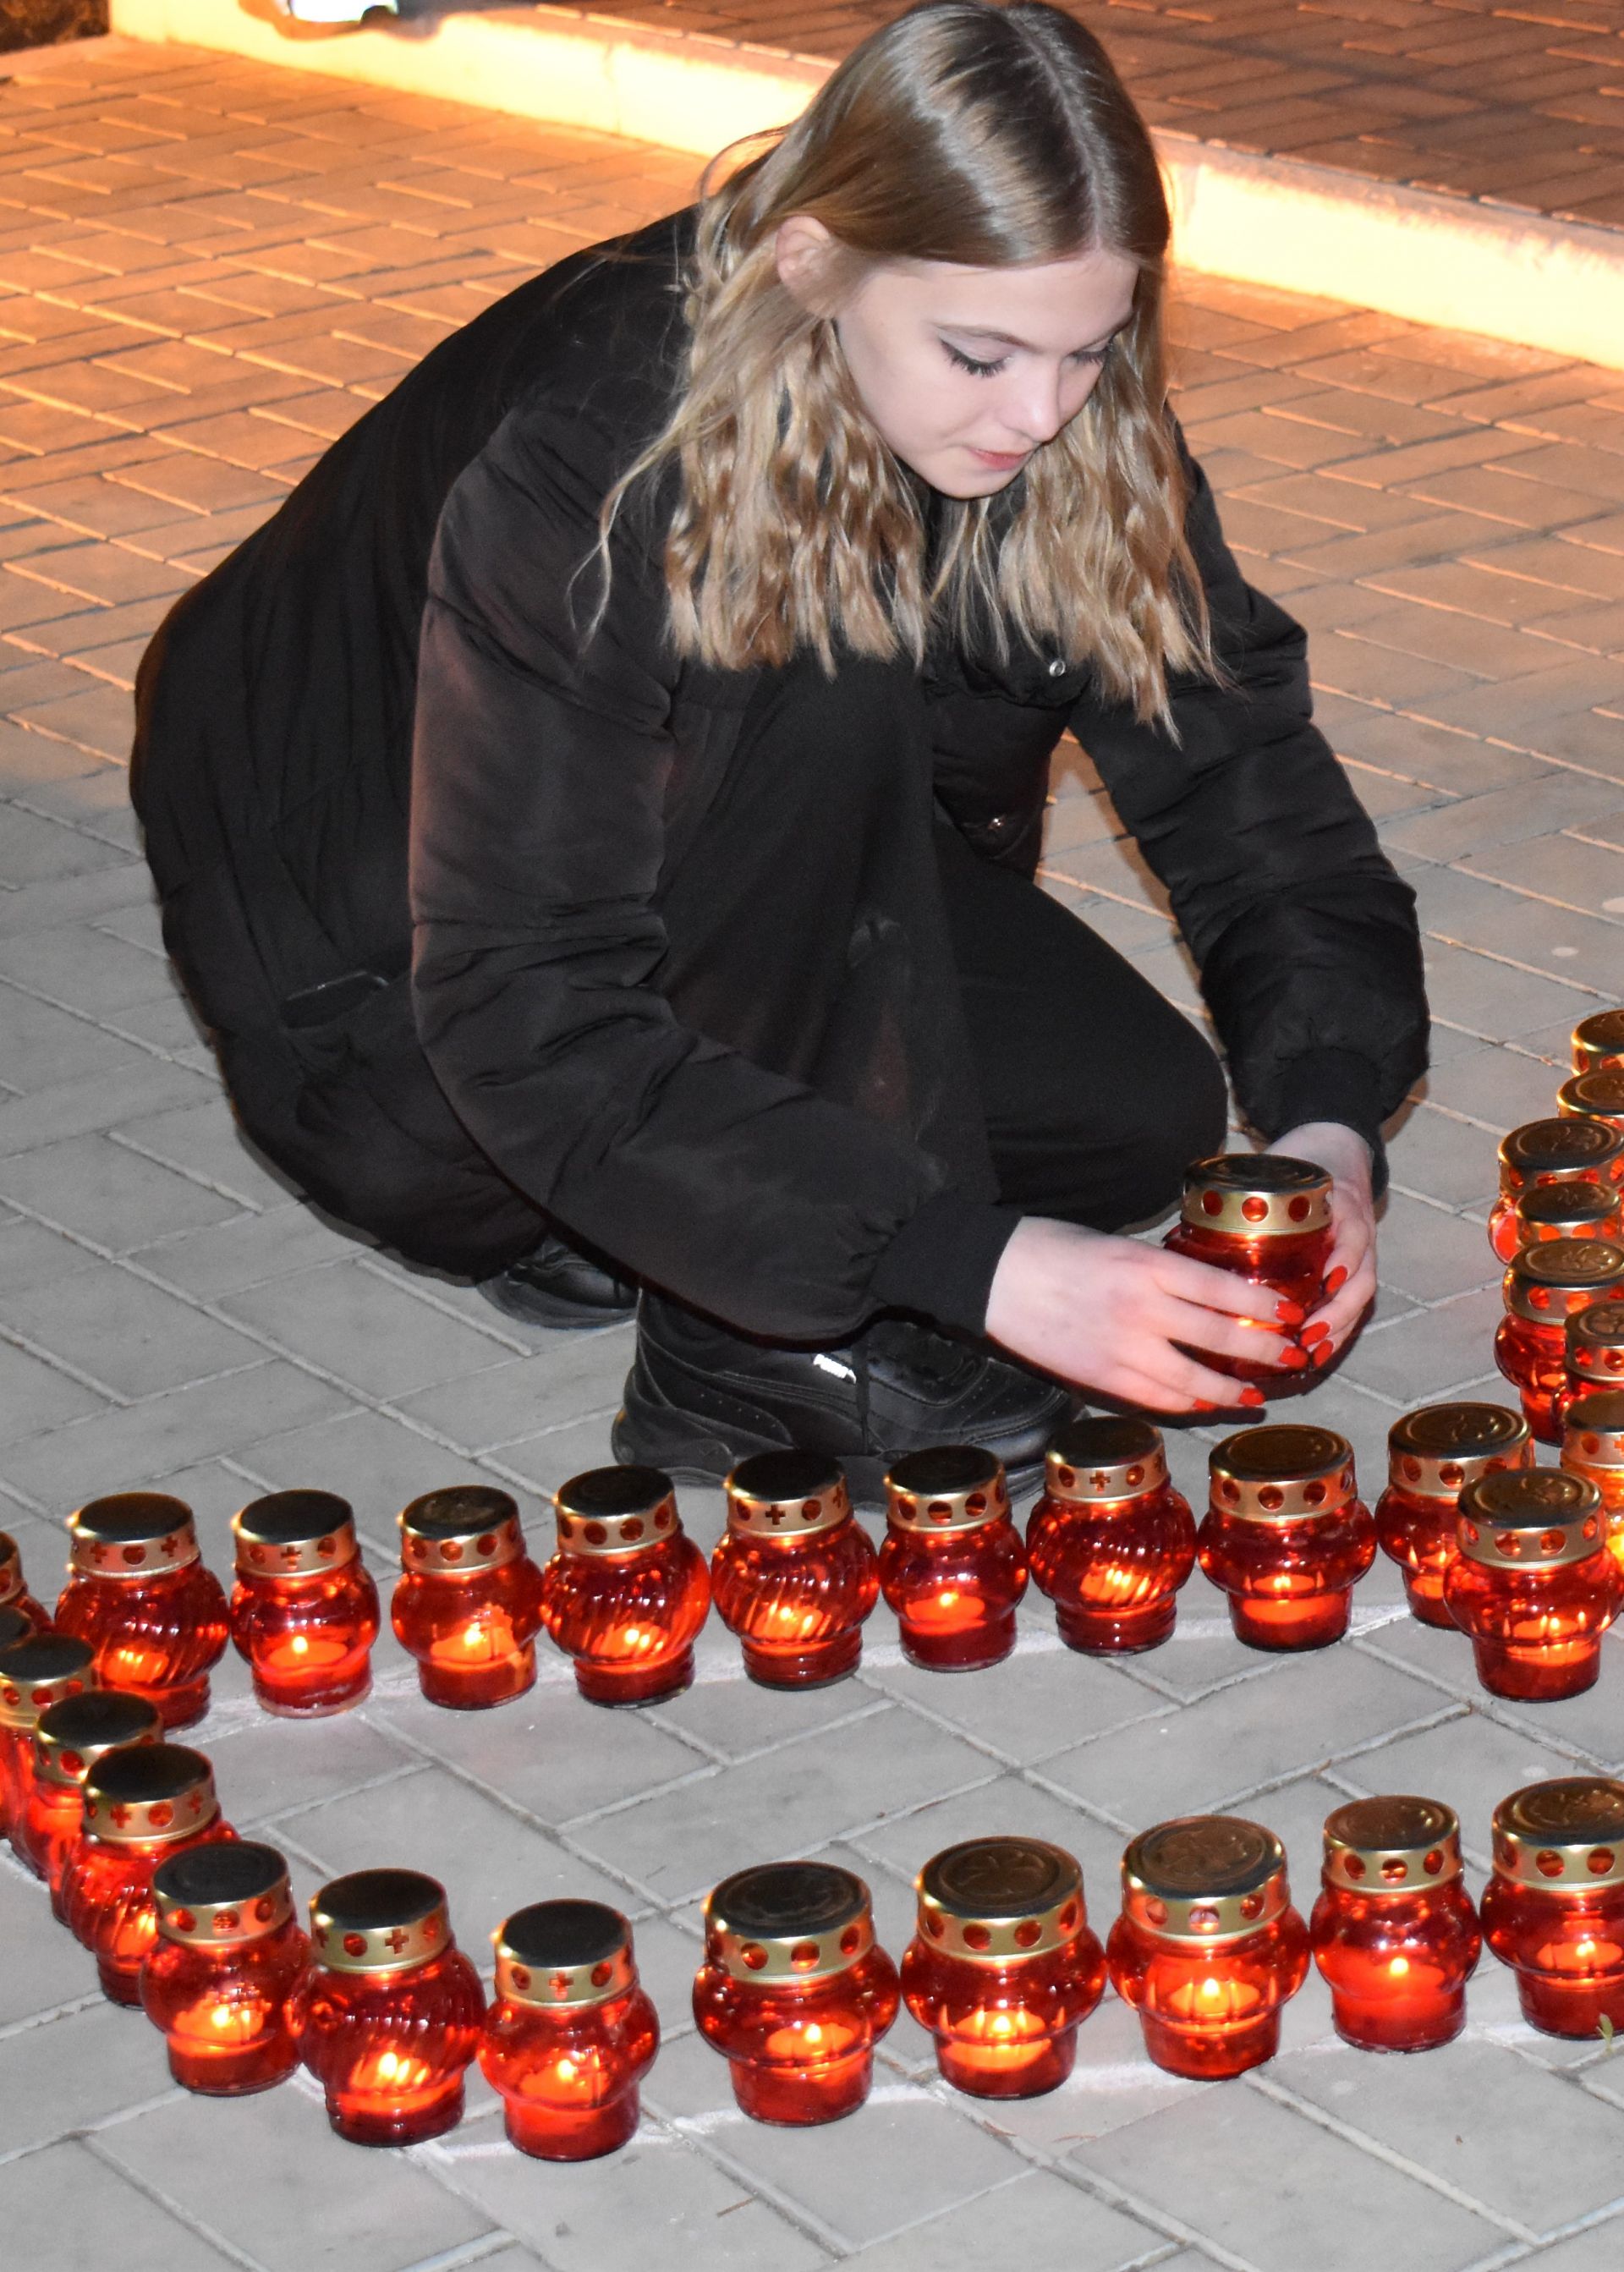 Акция «Свеча памяти» прошла в Камских Полянах